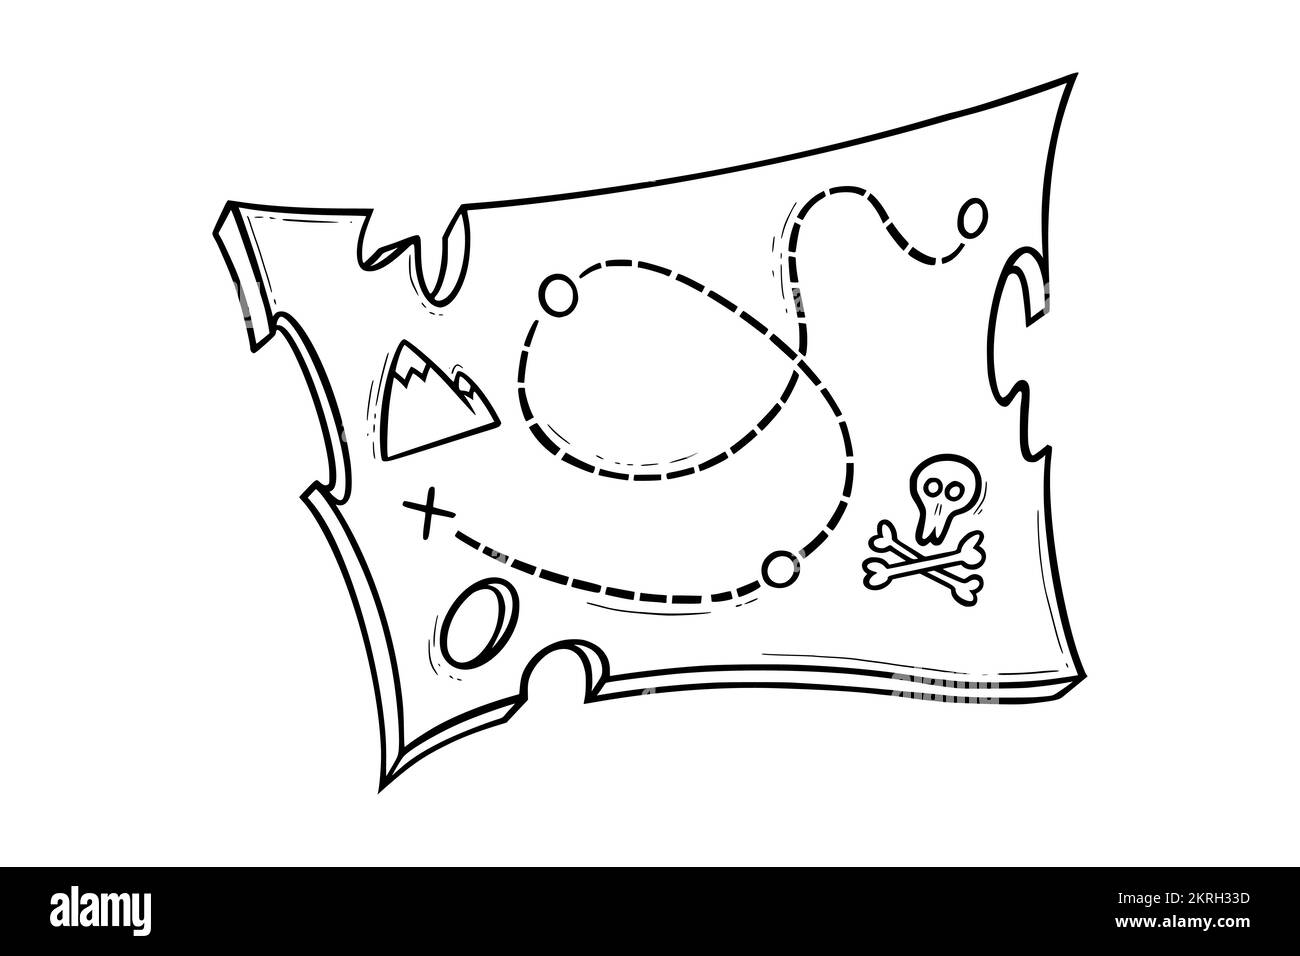 Piraten-Tresure-Karte. Skizze einer Piratenkarte für Schatzsuche oder Wanderlust. Vektordarstellung isoliert auf weißem Hintergrund Stock Vektor